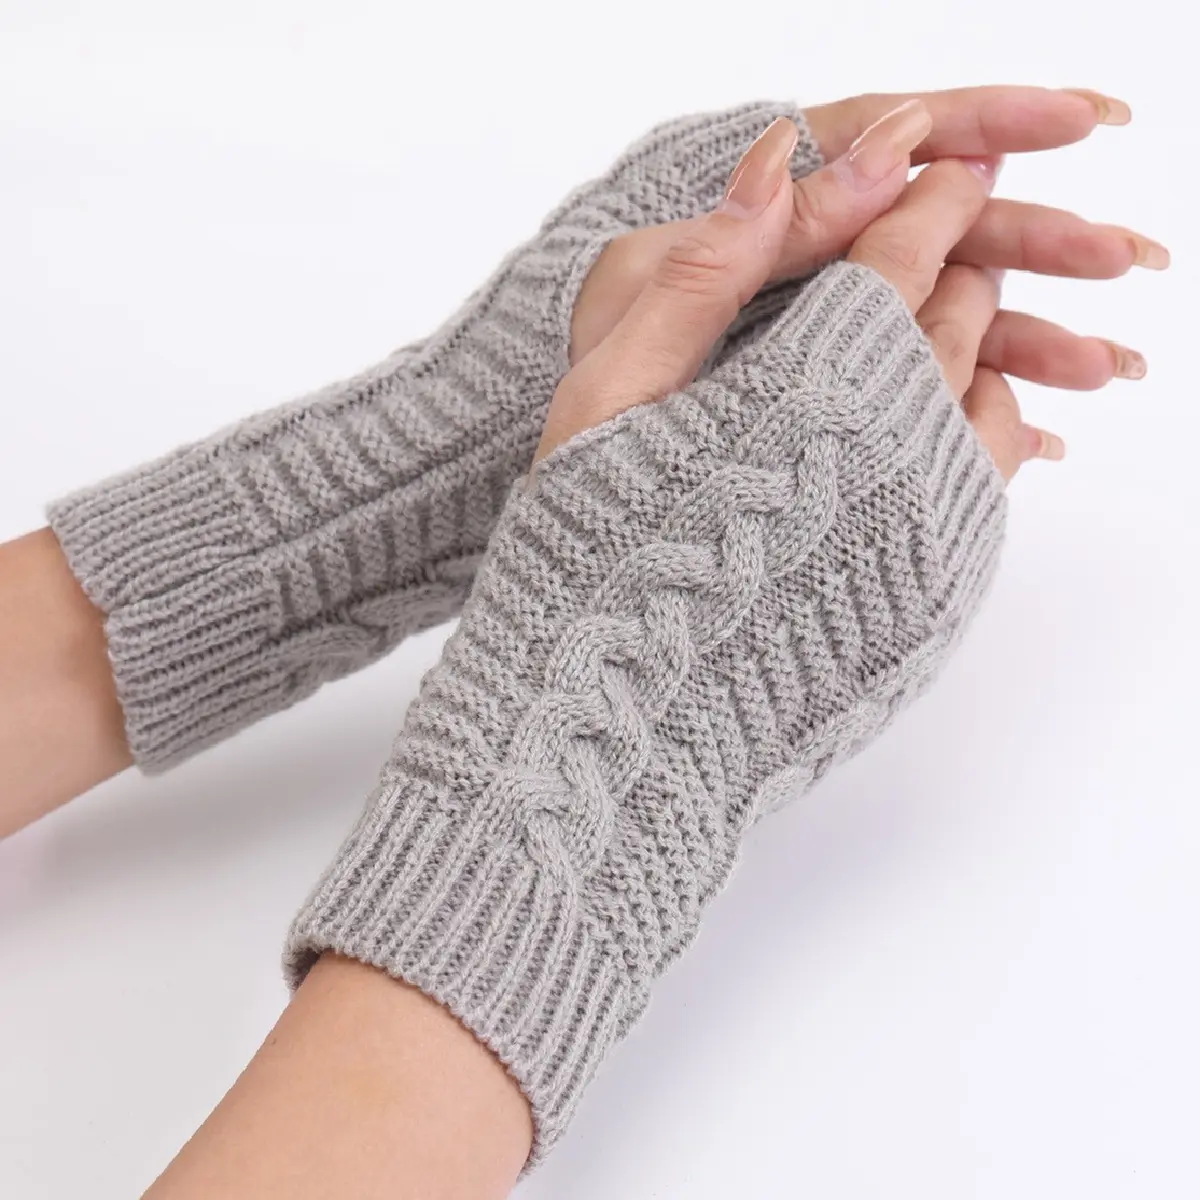 ถุงมือถักที่อุ่นแขนขอบสำหรับผู้หญิง,ถุงมือฤดูหนาวให้ความอบอุ่นสำหรับเด็กผู้หญิงแบบไม่มีนิ้ว